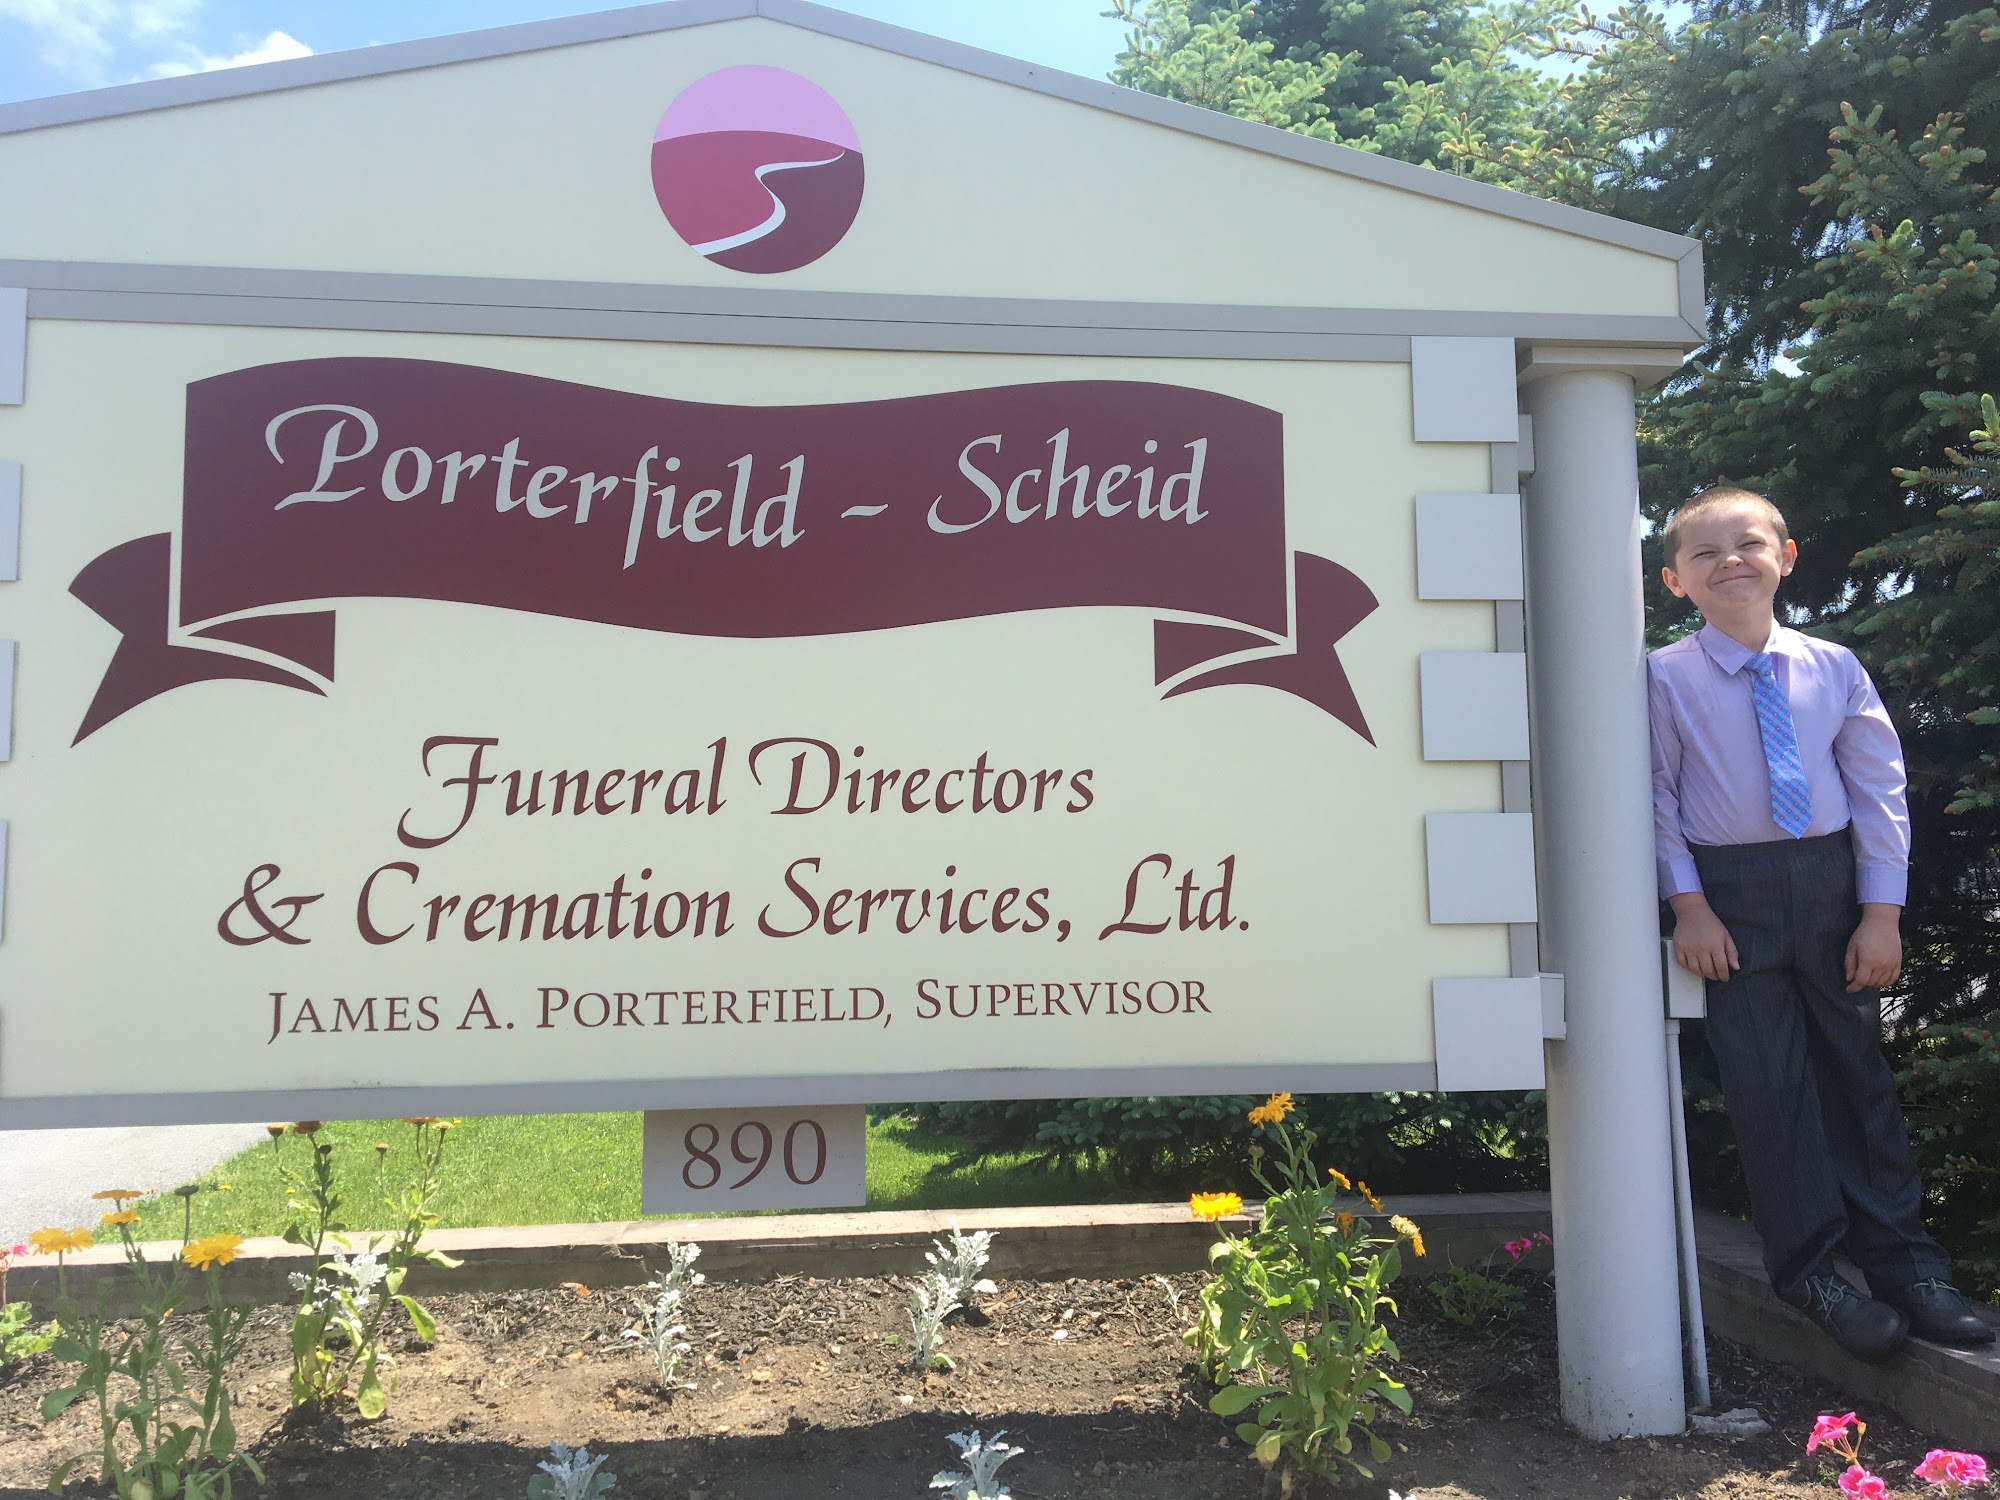 Porterfield-Scheid Funeral Directors and Cremation